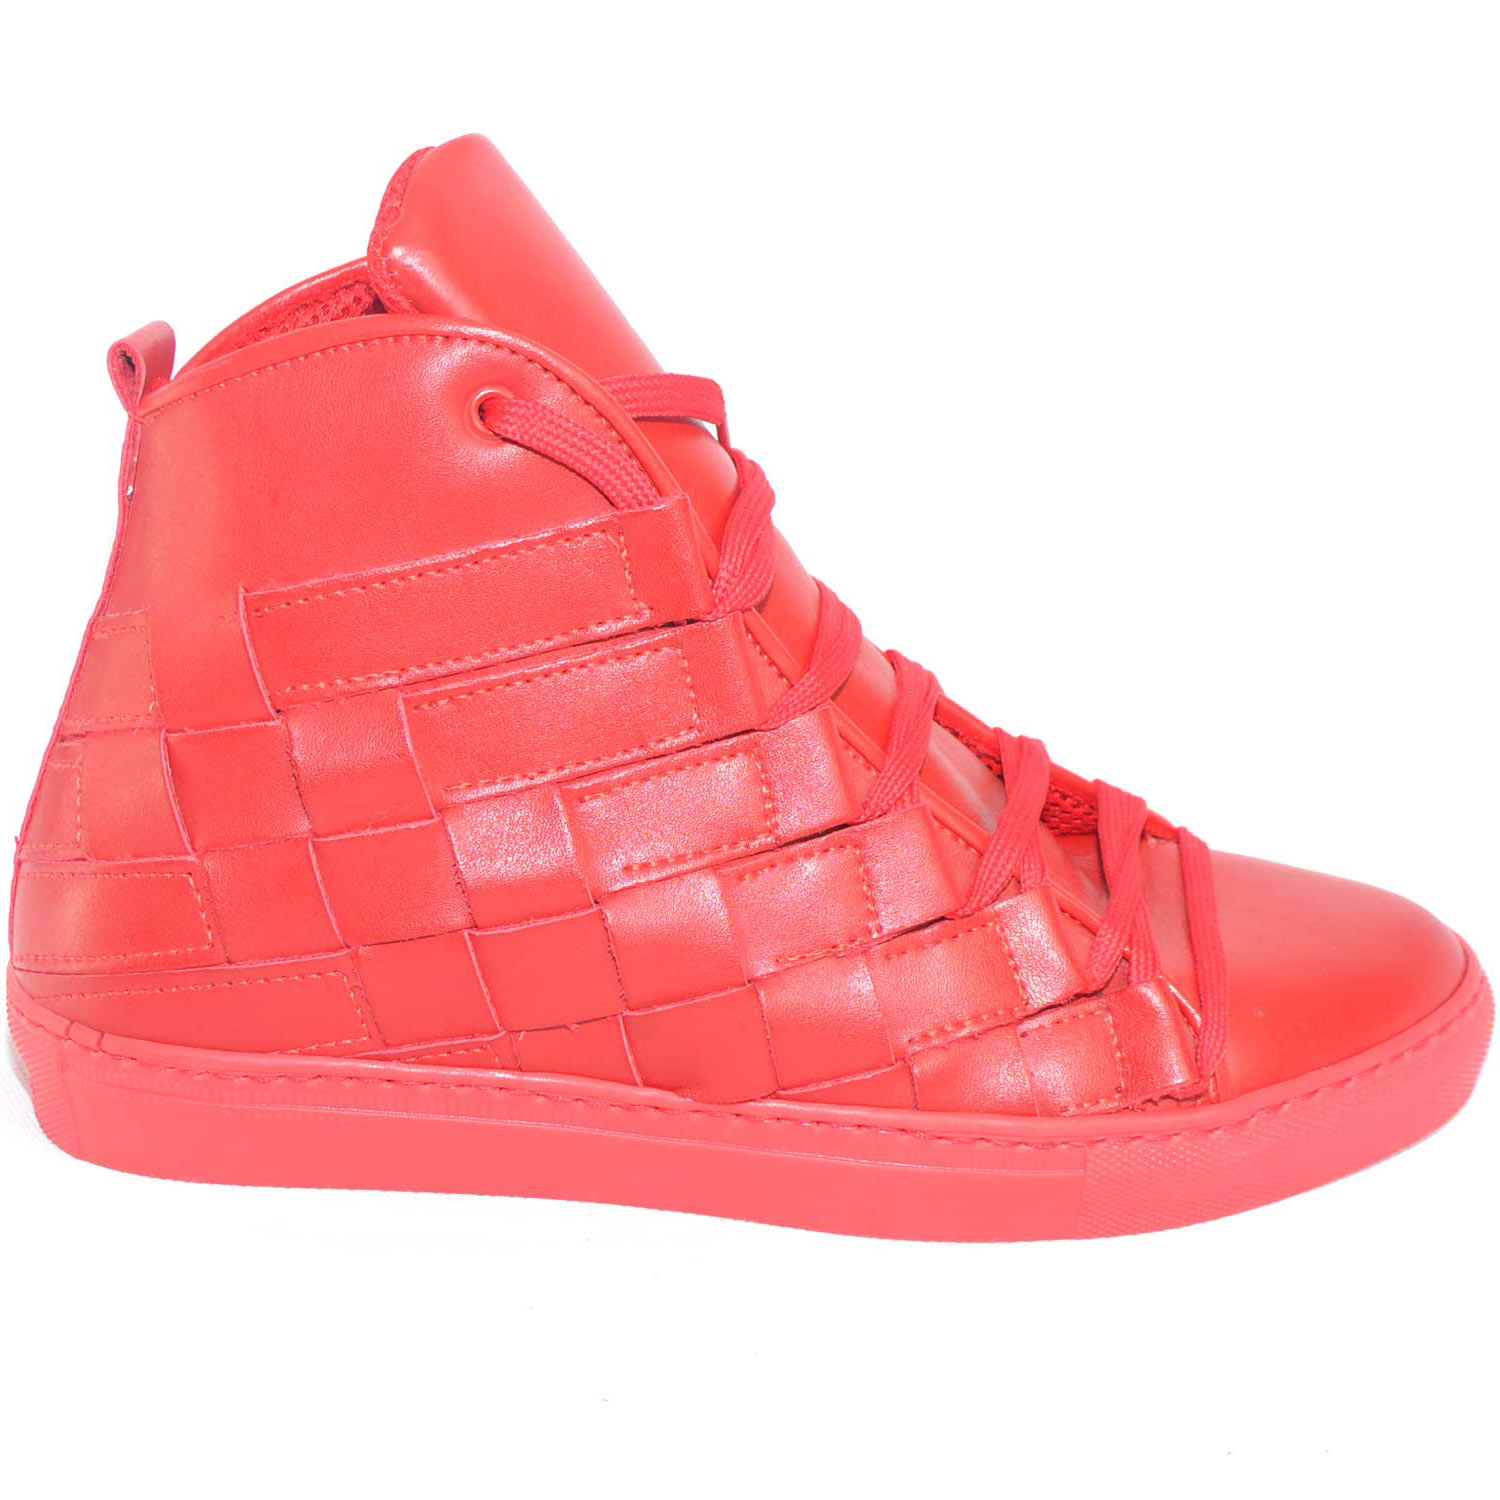 Sneakers alta scarpe uomo rosso made in italy intreccio grande a mano vera pelle top